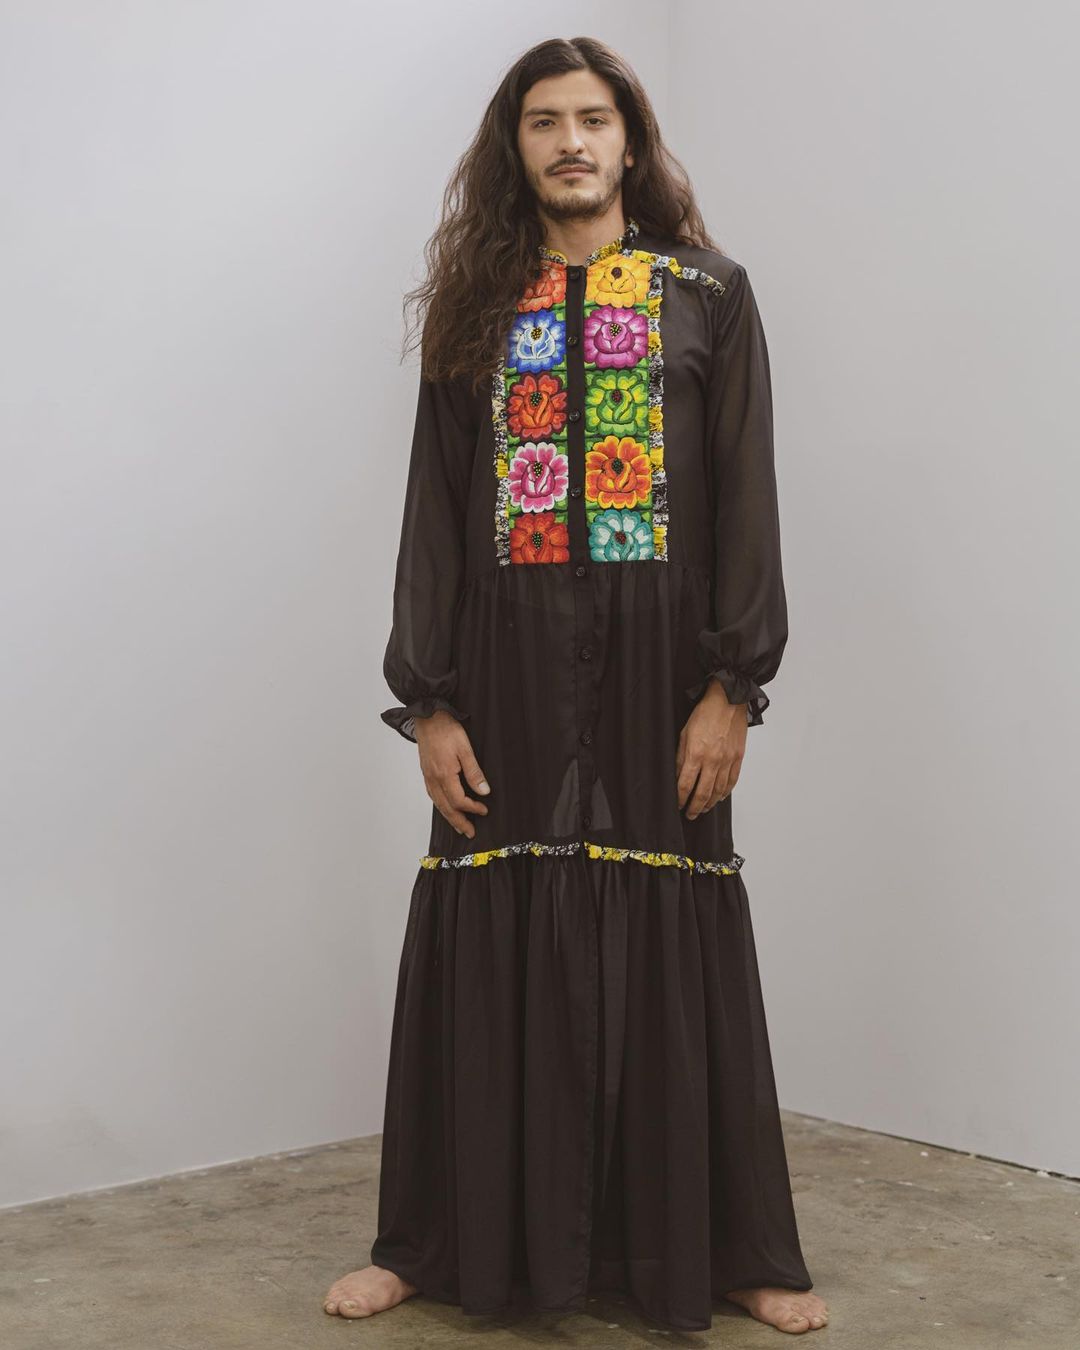 Dominga Mx rompe estereotipos y diseña maxi vestido para hombre